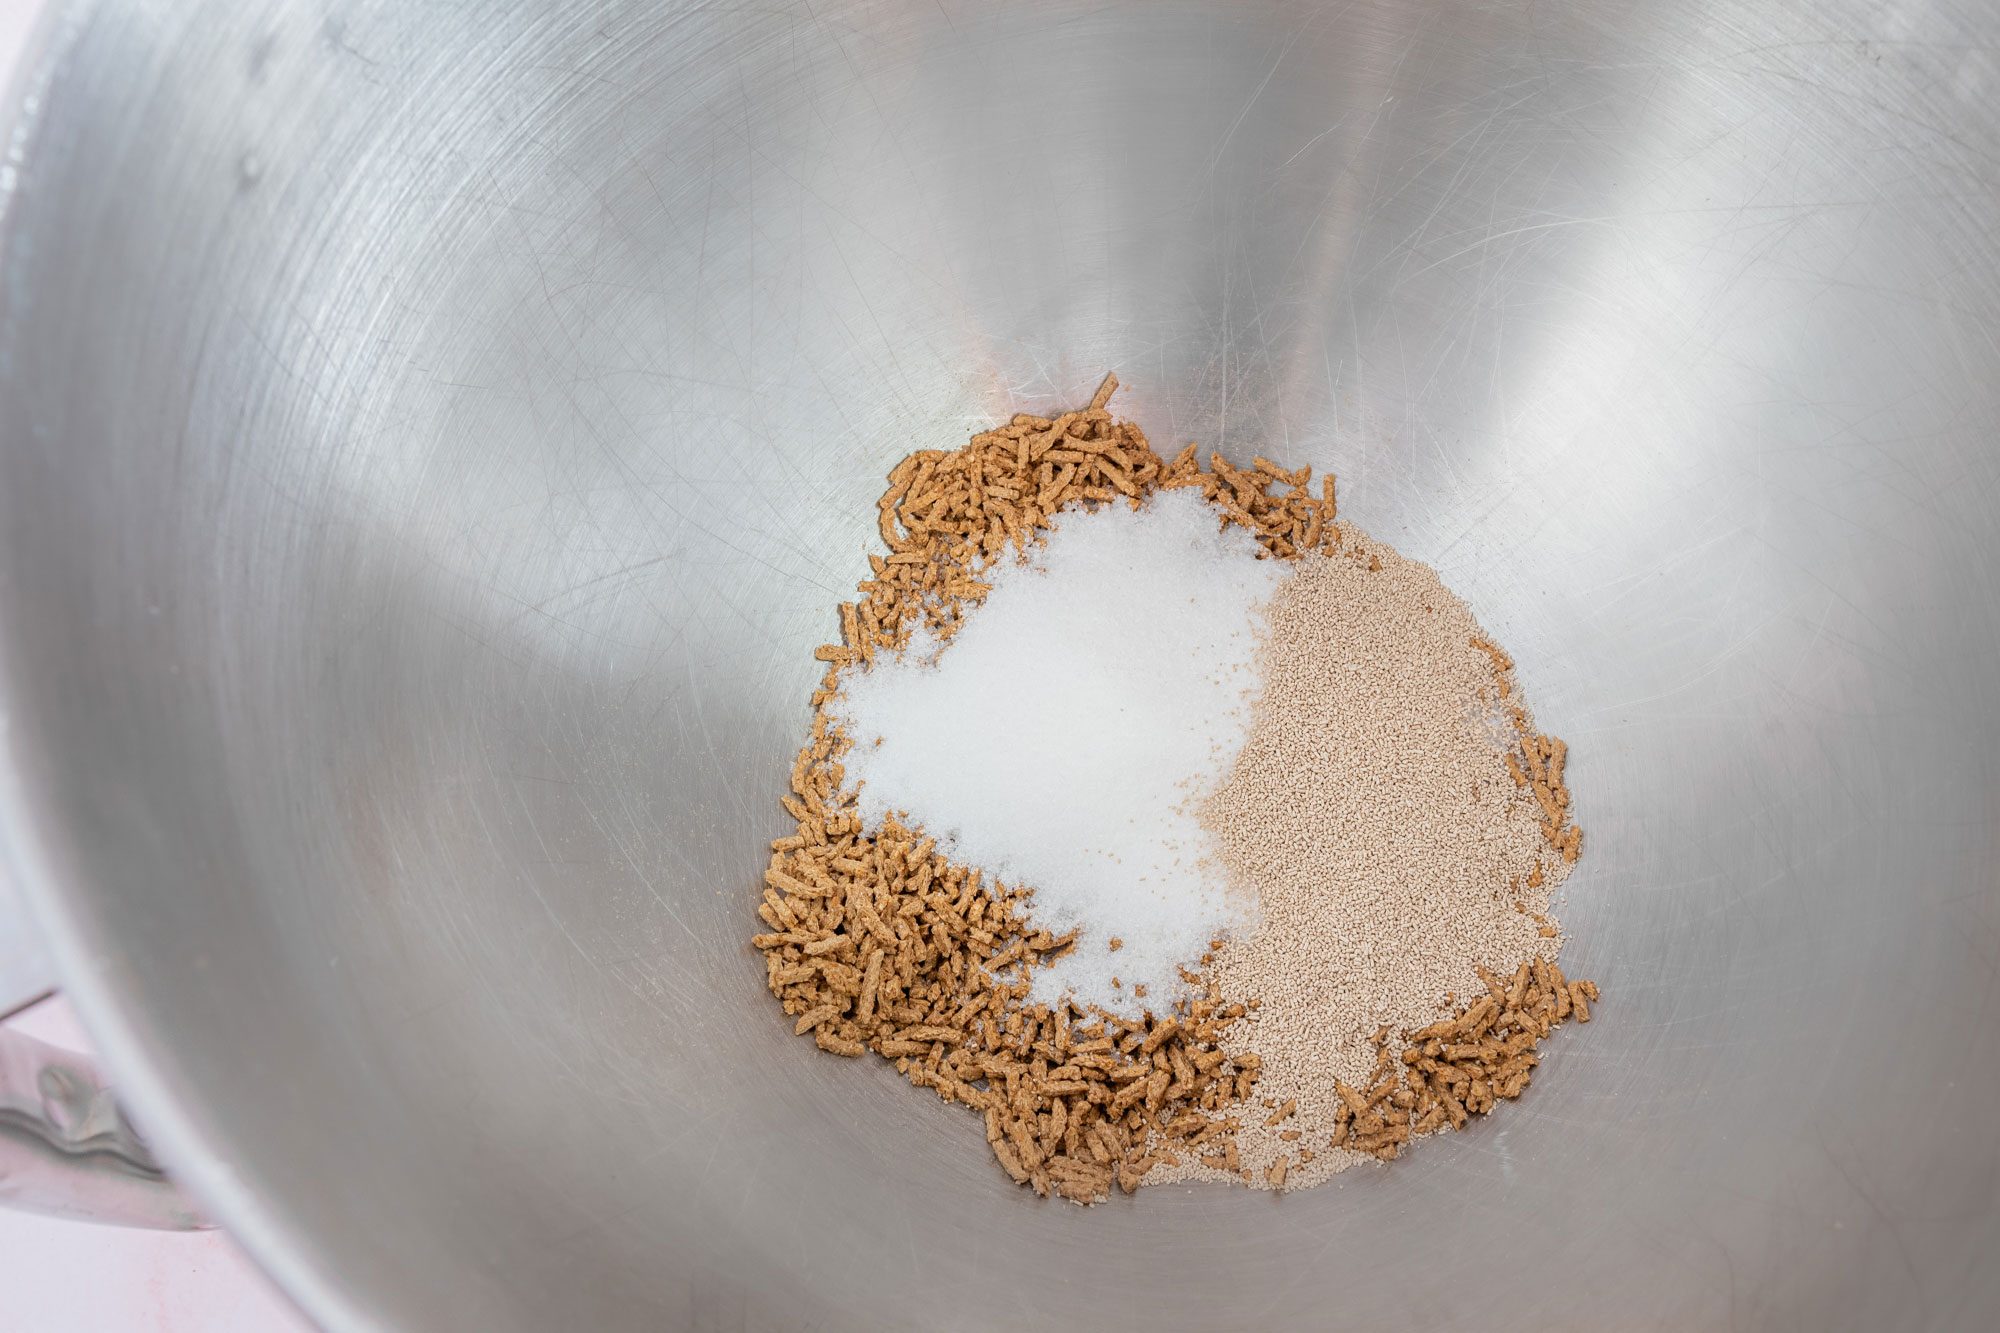 yeast ingredients in a metal bowl